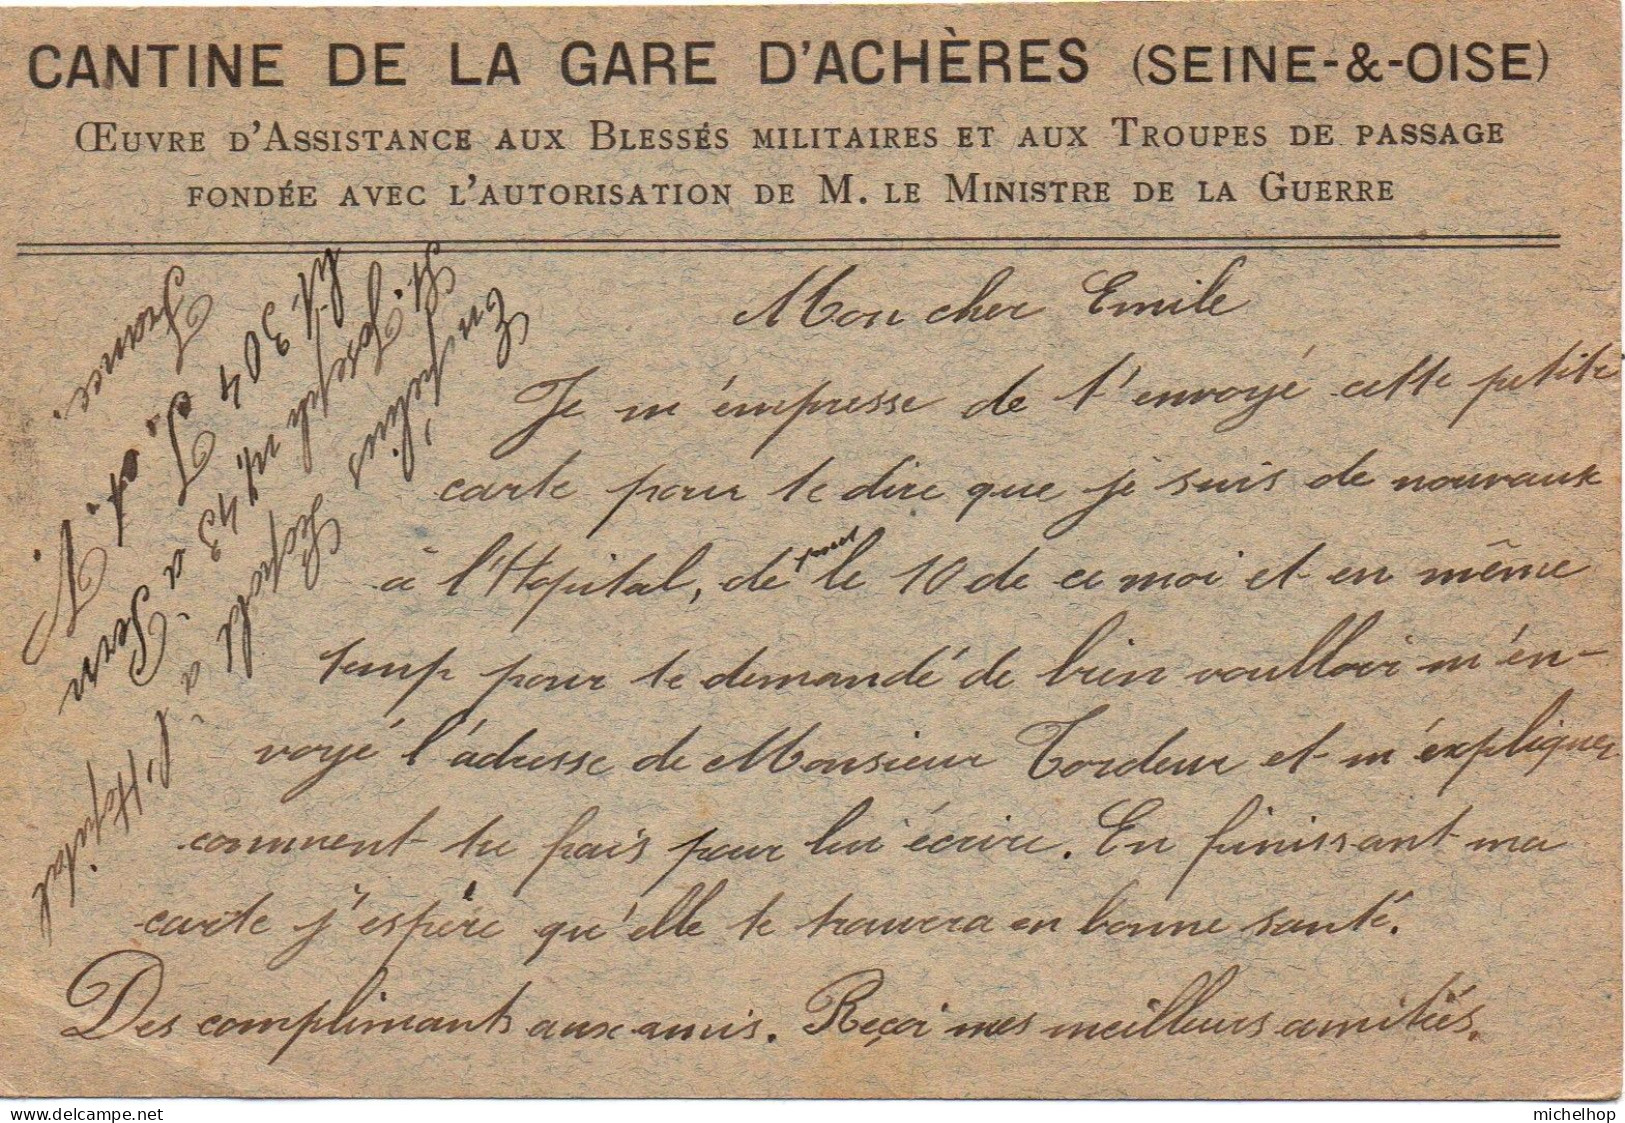 Carte Postale En Franchise Expédiée Par Un Militaire Belge Hospitalisé à St Pern - Repiquage Cantine Gare D'Achères - Esercito Belga